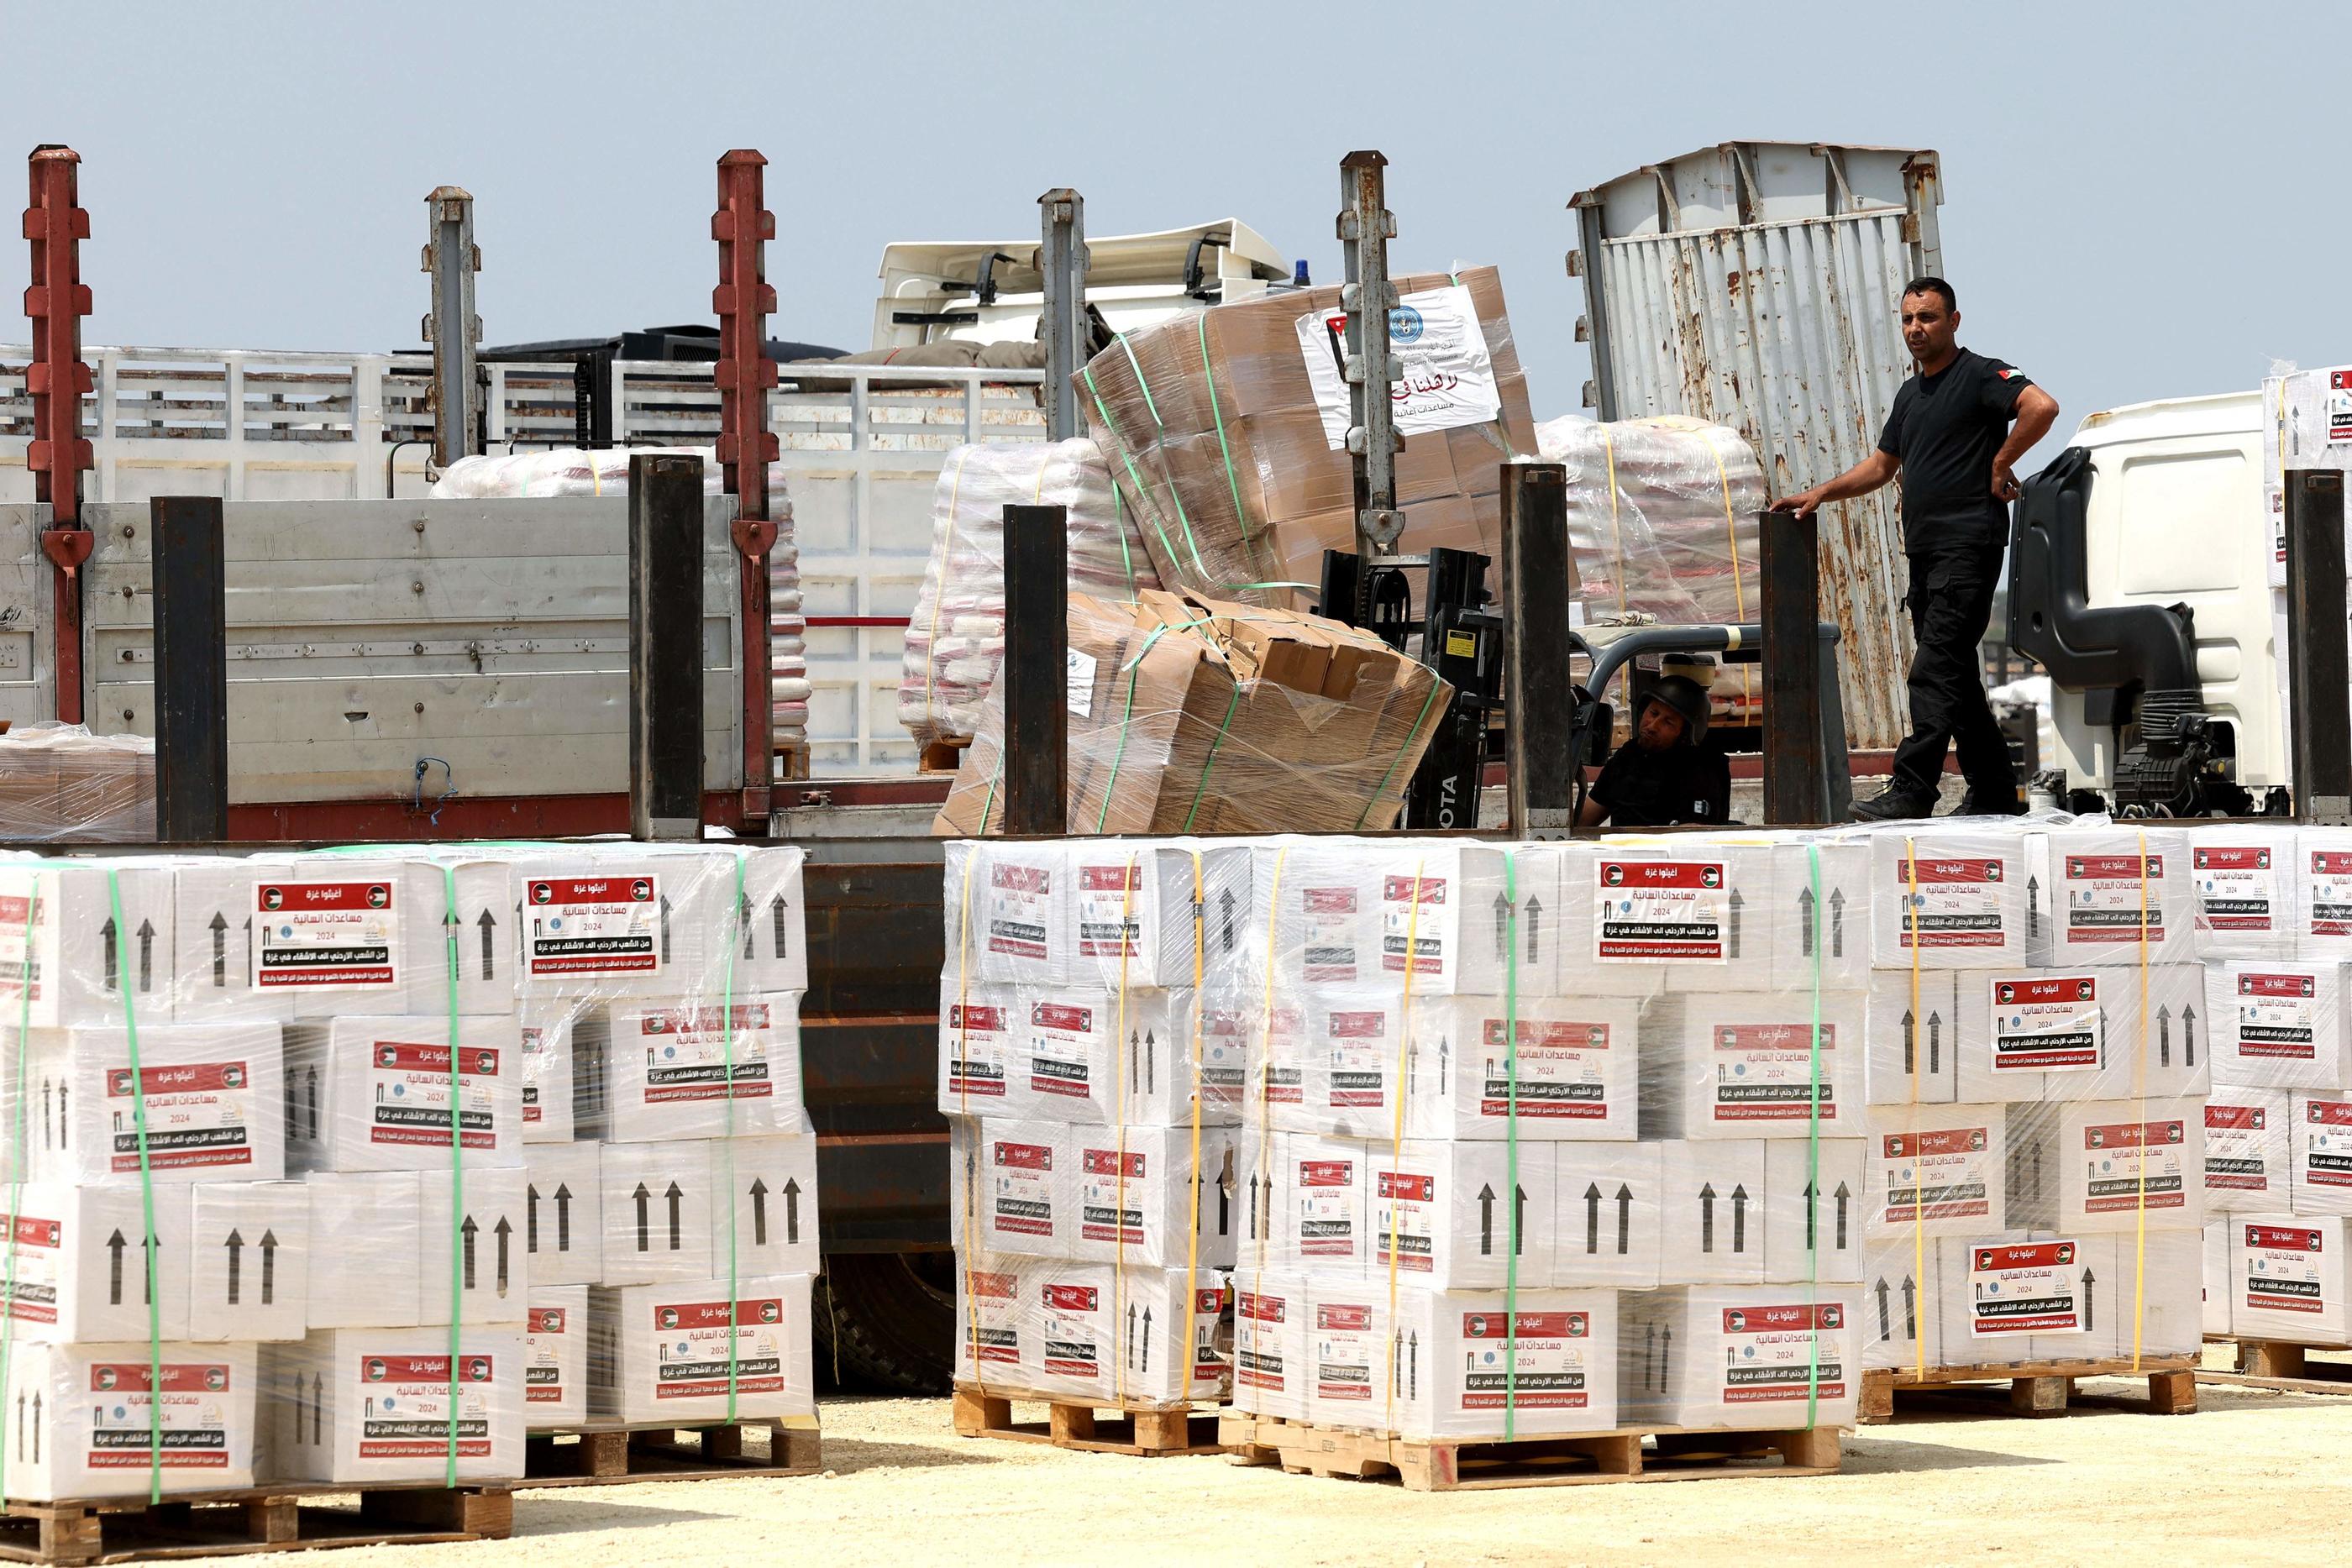 Contrôlée en amont à Chypre, l'aide devrait être distribuée « rapidement » dans Gaza une fois débarquée. (Illustration) AFP/Jack Guez